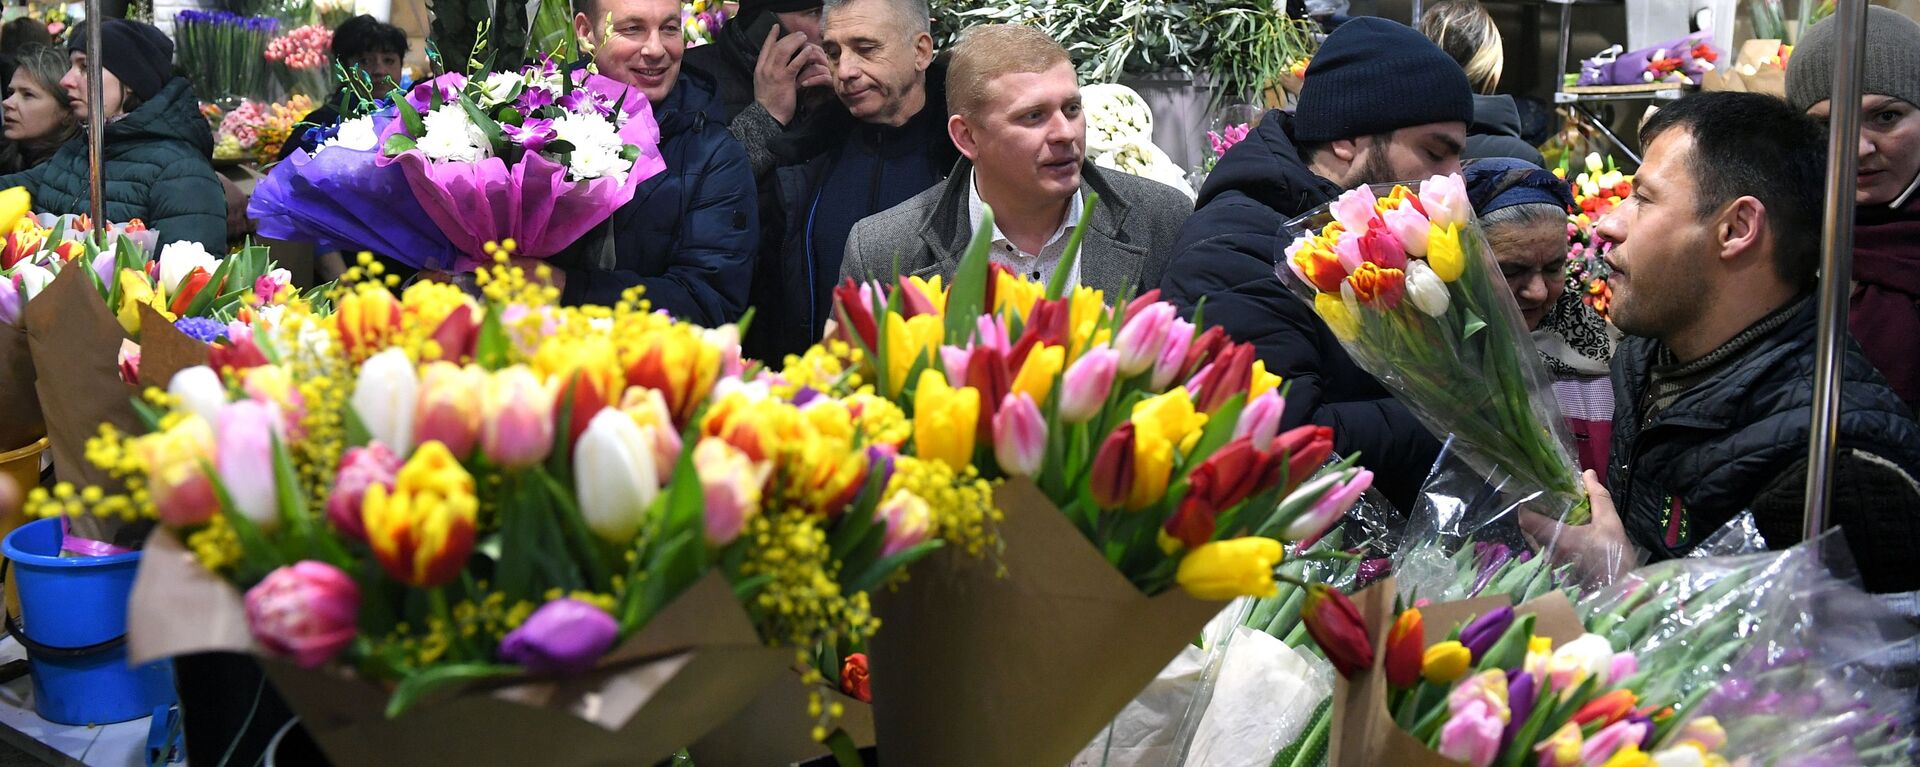 Enormes filas en una feria de flores moscovita en vísperas del día 8 de marzo - Sputnik Mundo, 1920, 08.03.2020